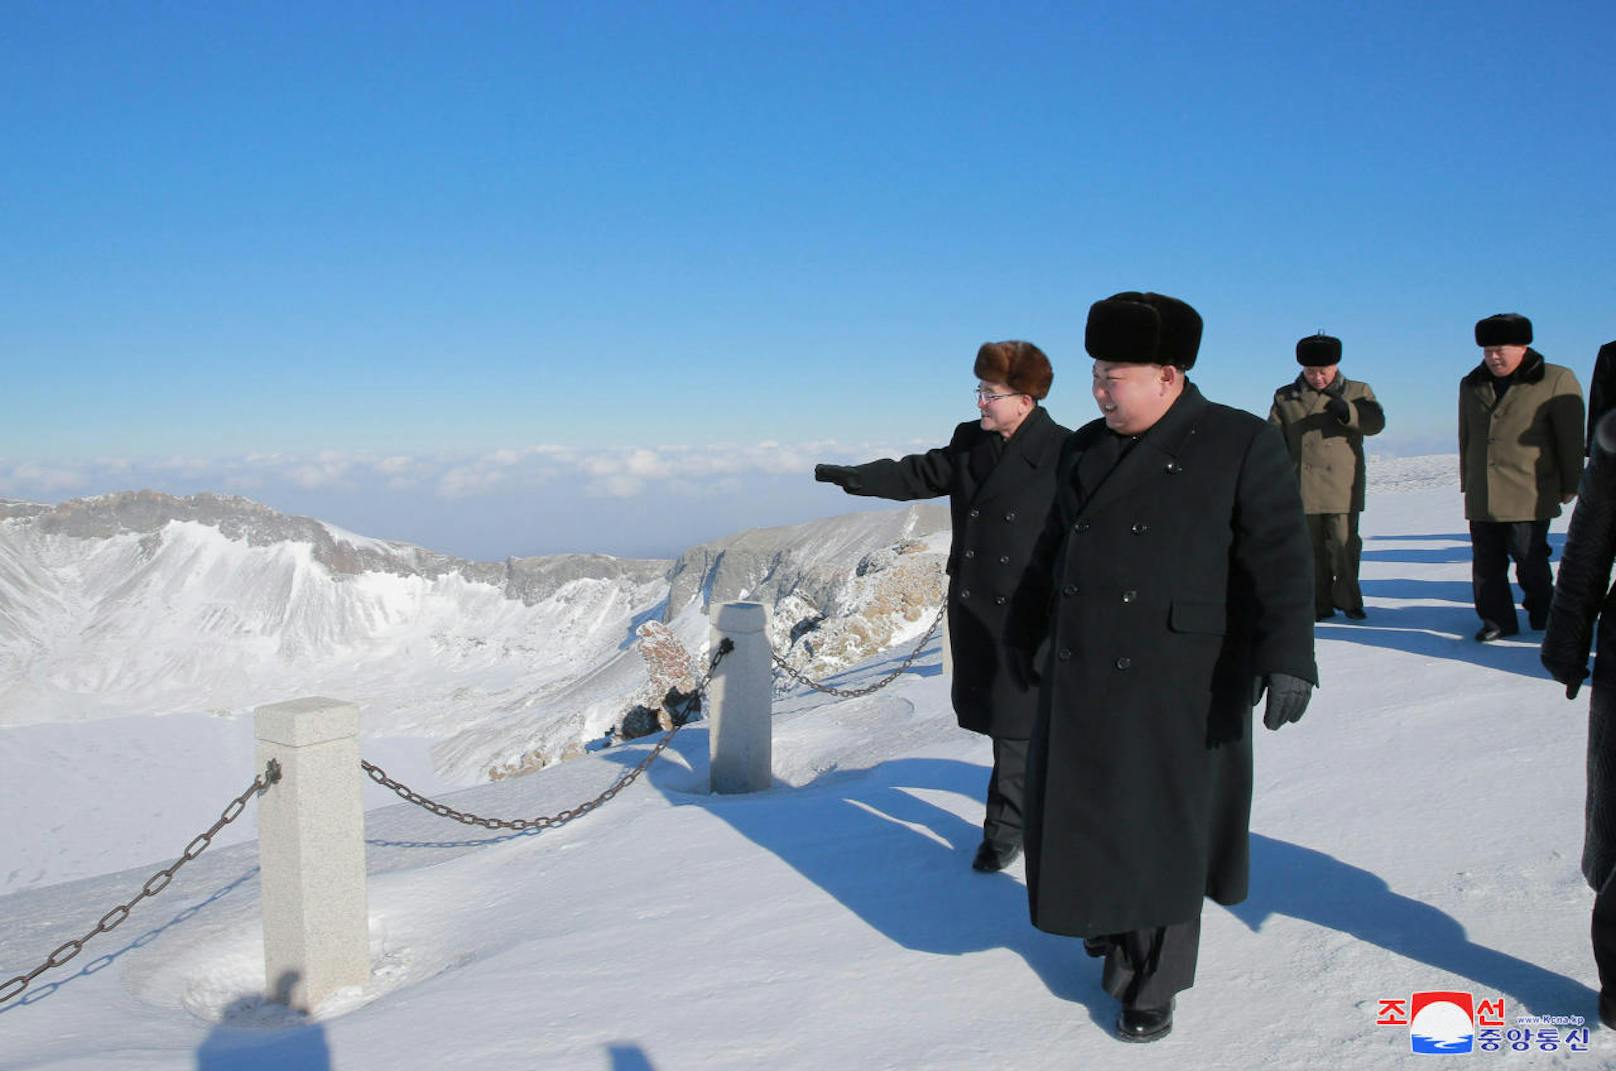 Obwohl die staatlichen Medien behaupten, dass Kim Jong-un den Gipfel selbstständig erklommen hat, fand sich in dessen Gesicht von Anstrengung jedoch keine Spur.